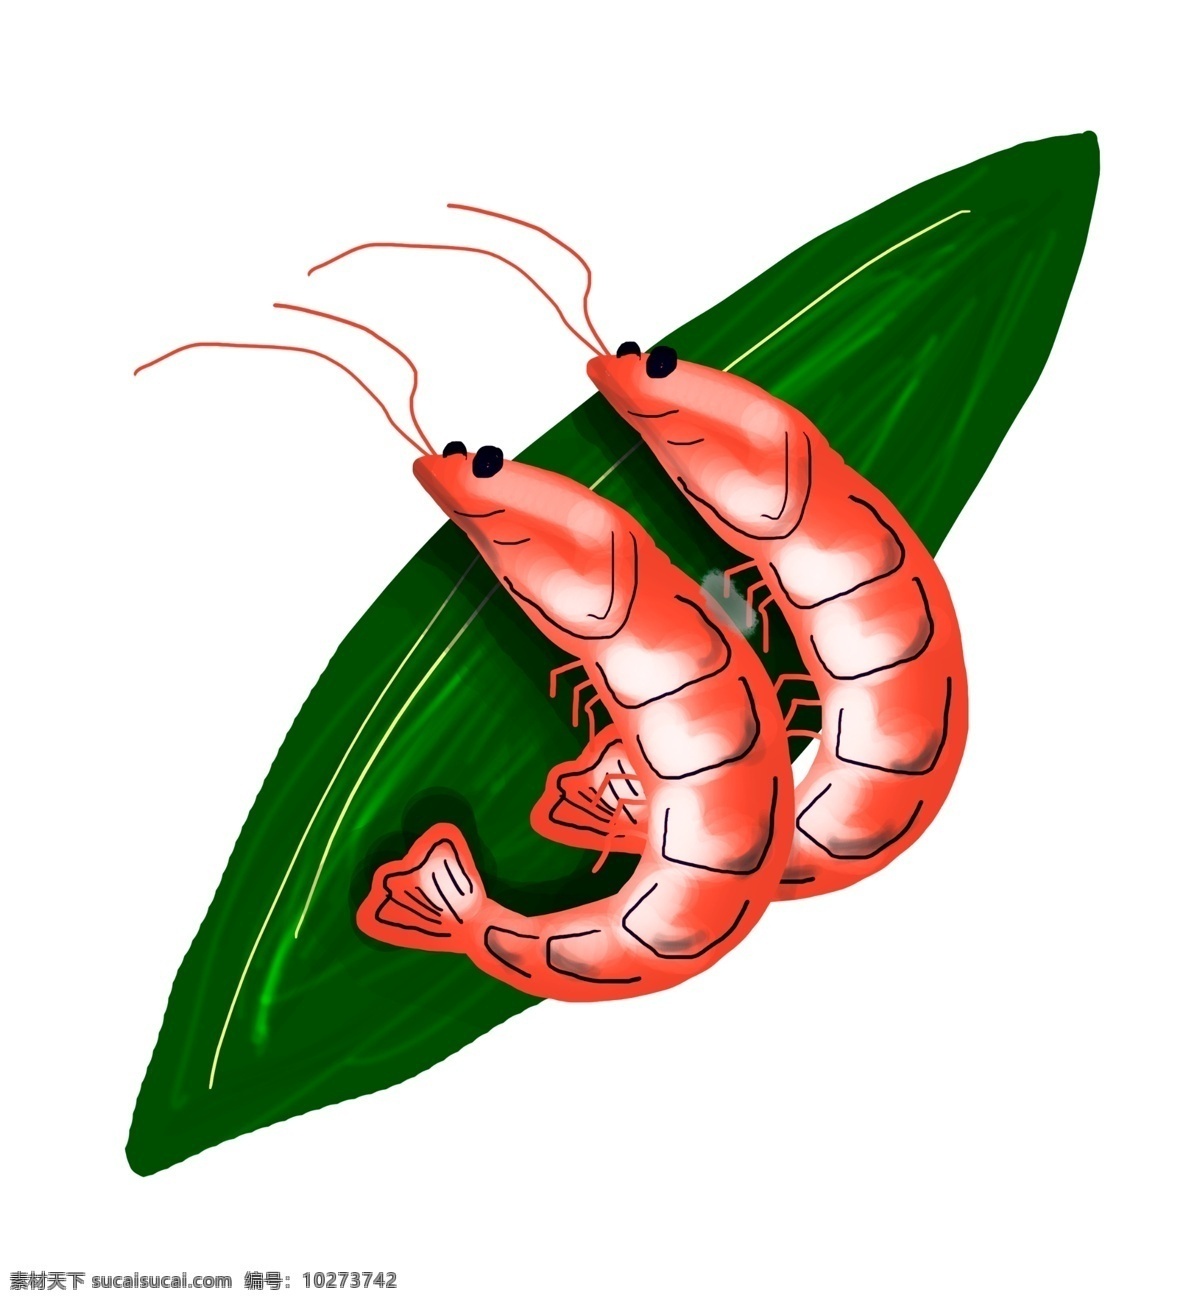 卡通 手绘 美味 蒸 虾 插画 节肢动物 水里 海里 营养价值 食物 美食 清蒸 红烧 味鲜美 营养丰富 卡通手绘